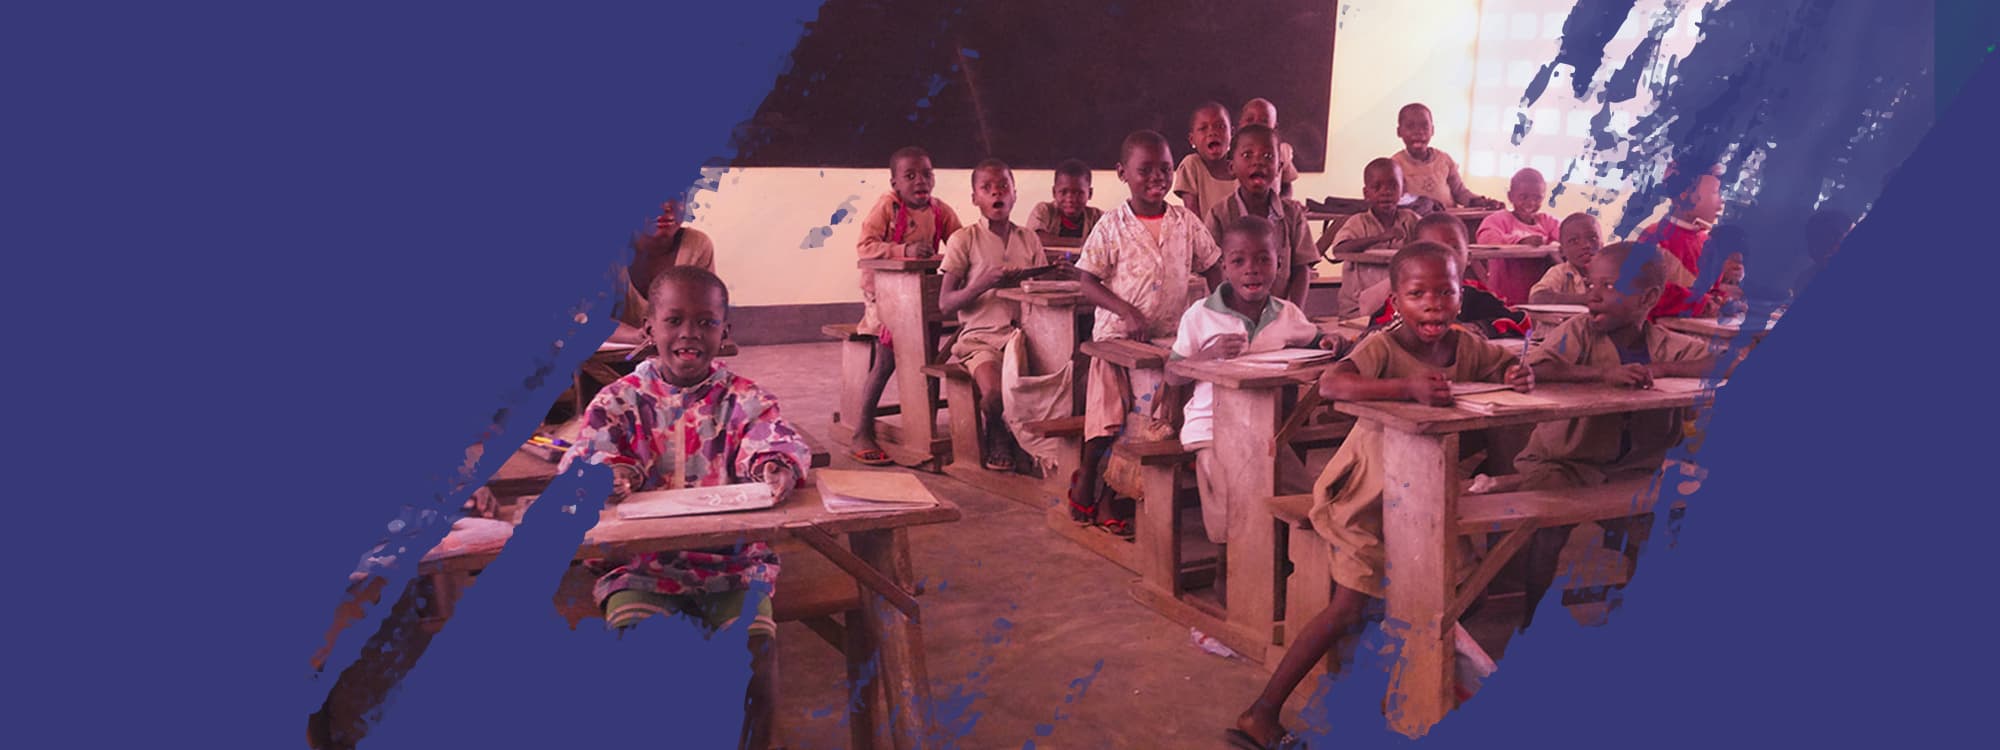 Progetto educazione in Malawi